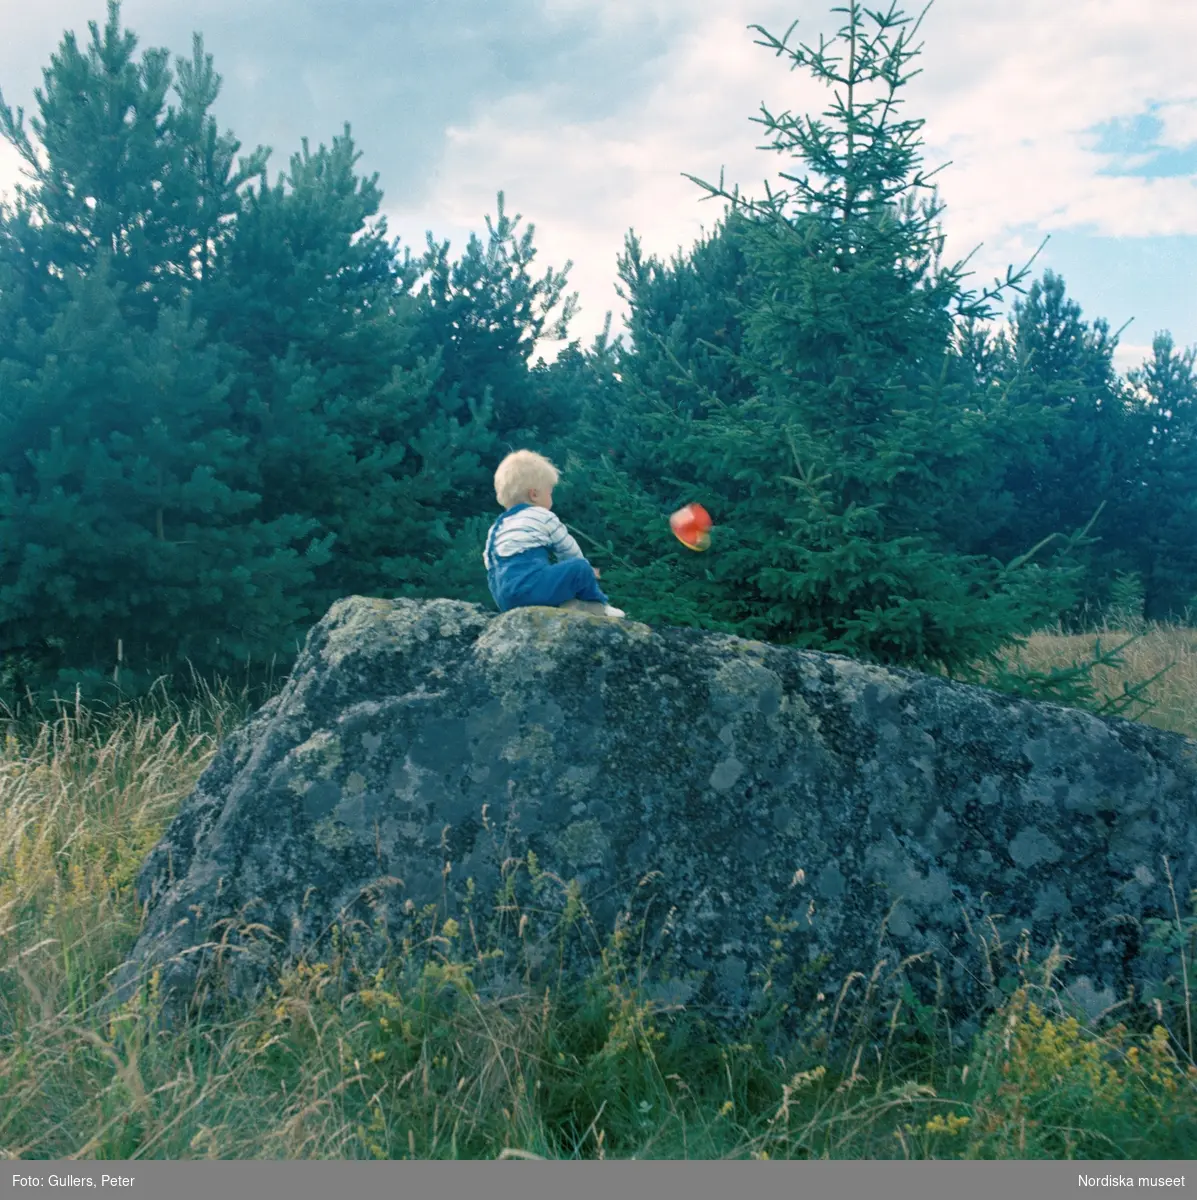 Sommarställe. Ett litet barn sitter på en stor sten på en äng med gran och tallar i bakgrunden. Något rött -kanske en plasthink med gult handtag? far igenom luften framför barnet.